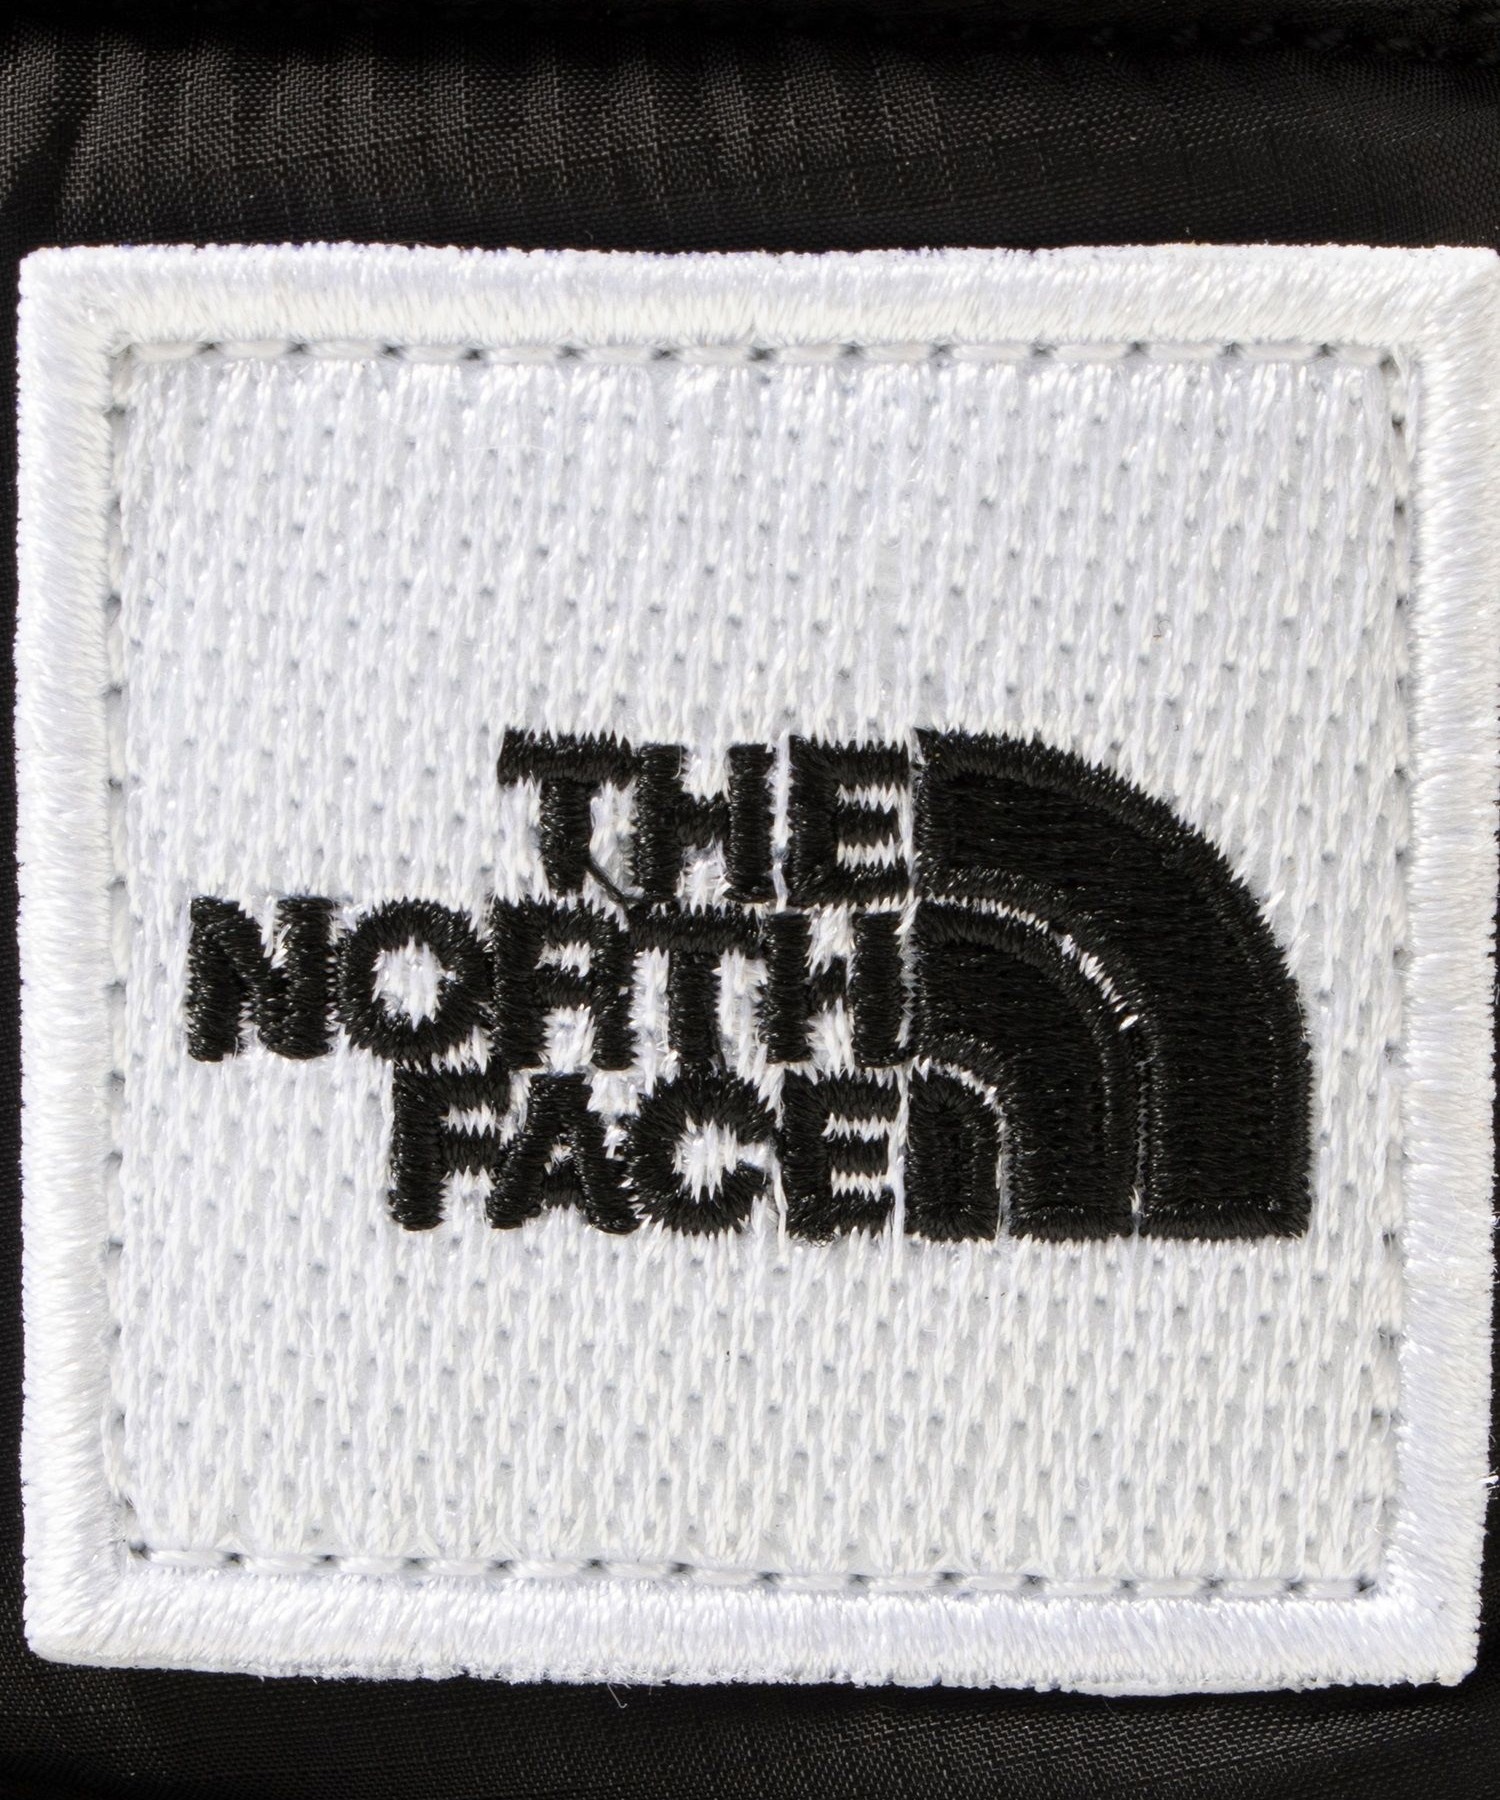 THE NORTH FACE/ザ・ノース・フェイス ヌプシ ブーティ ロゴ ショート キッズ ウィンターブーツ 防水 ブラック NFJ52280 KW(KW-14.0cm)